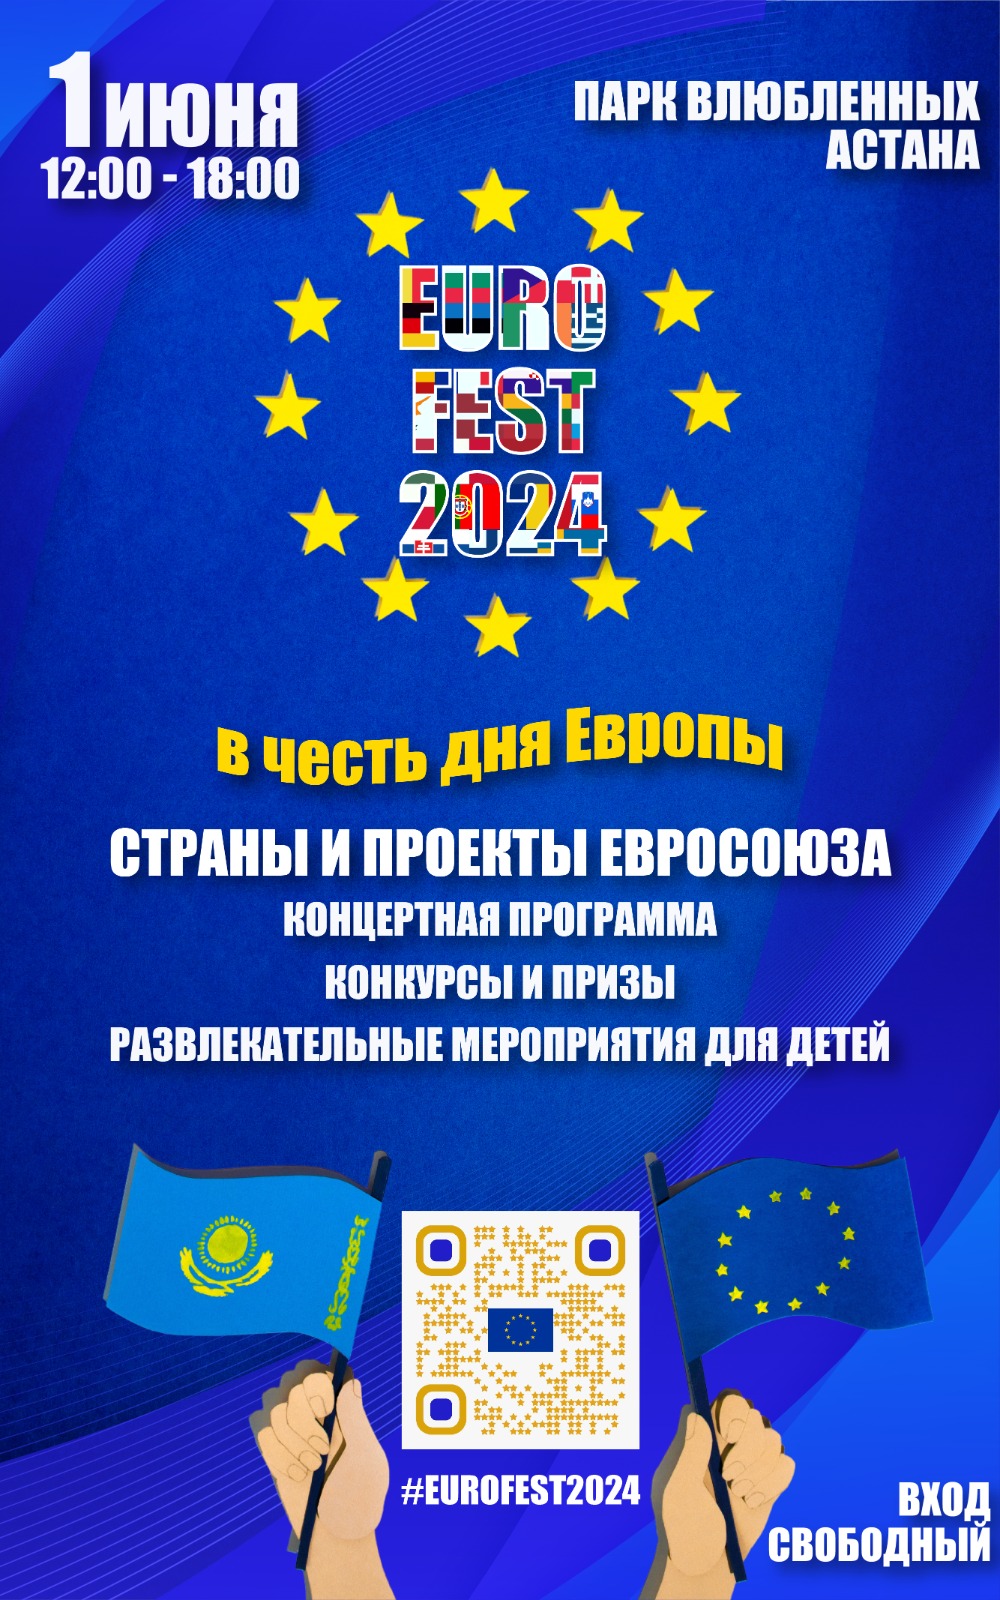 EuroFest2024 Астана